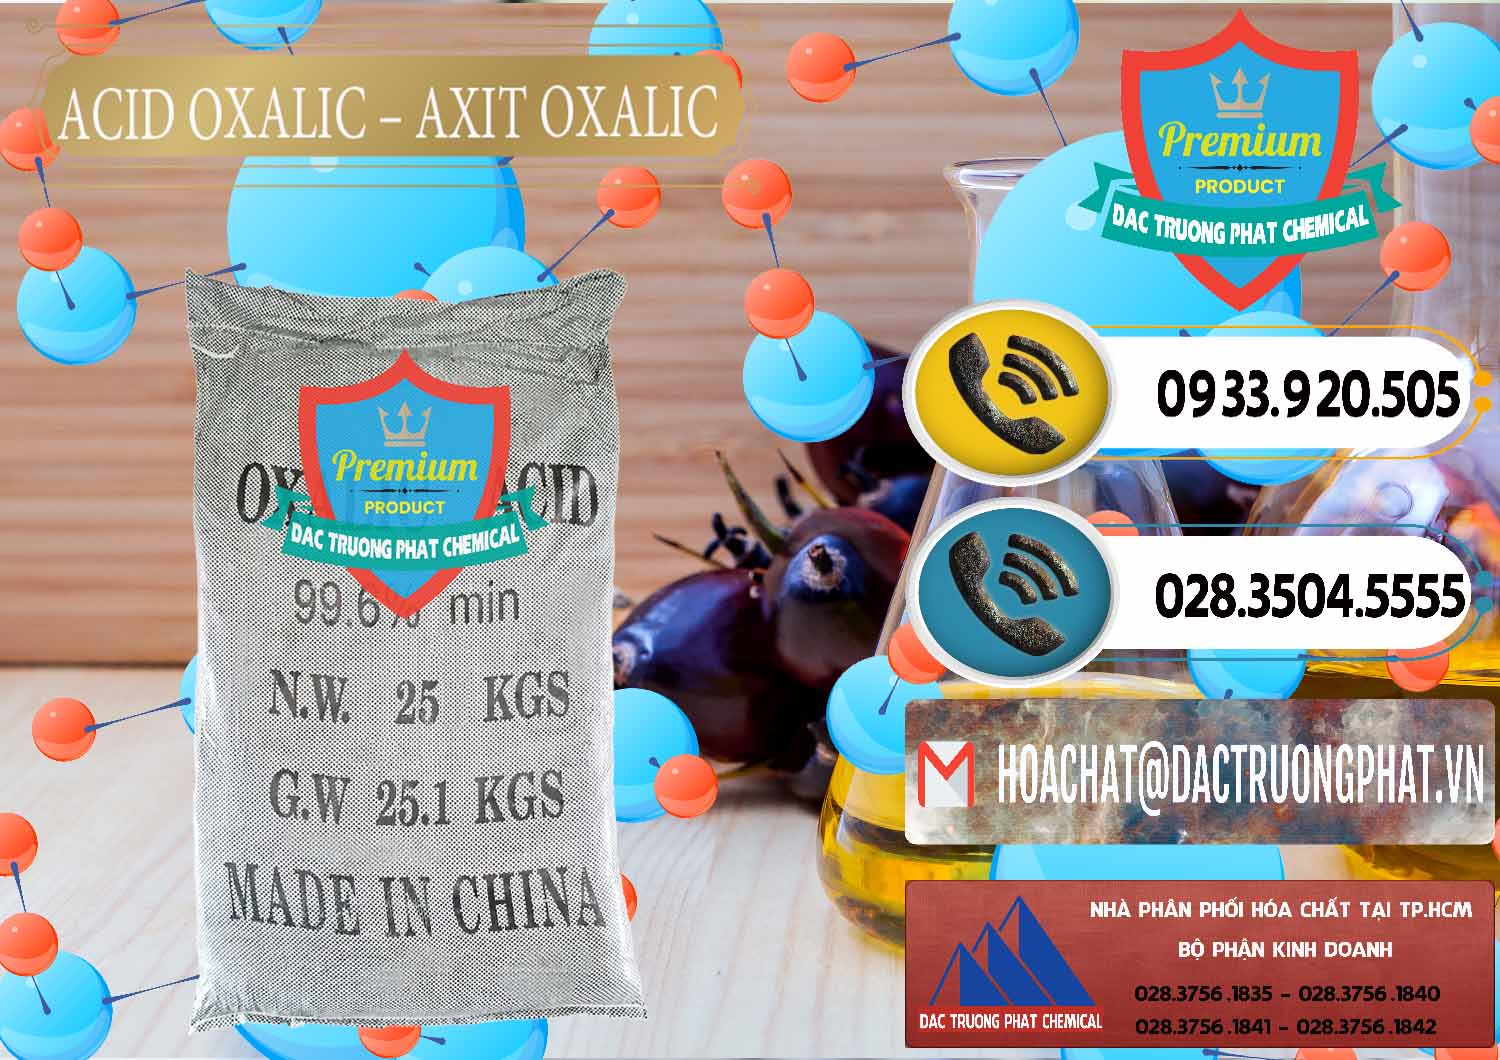 Công ty chuyên nhập khẩu và bán Acid Oxalic – Axit Oxalic 99.6% Trung Quốc China - 0014 - Nơi chuyên phân phối & cung ứng hóa chất tại TP.HCM - hoachatdetnhuom.vn